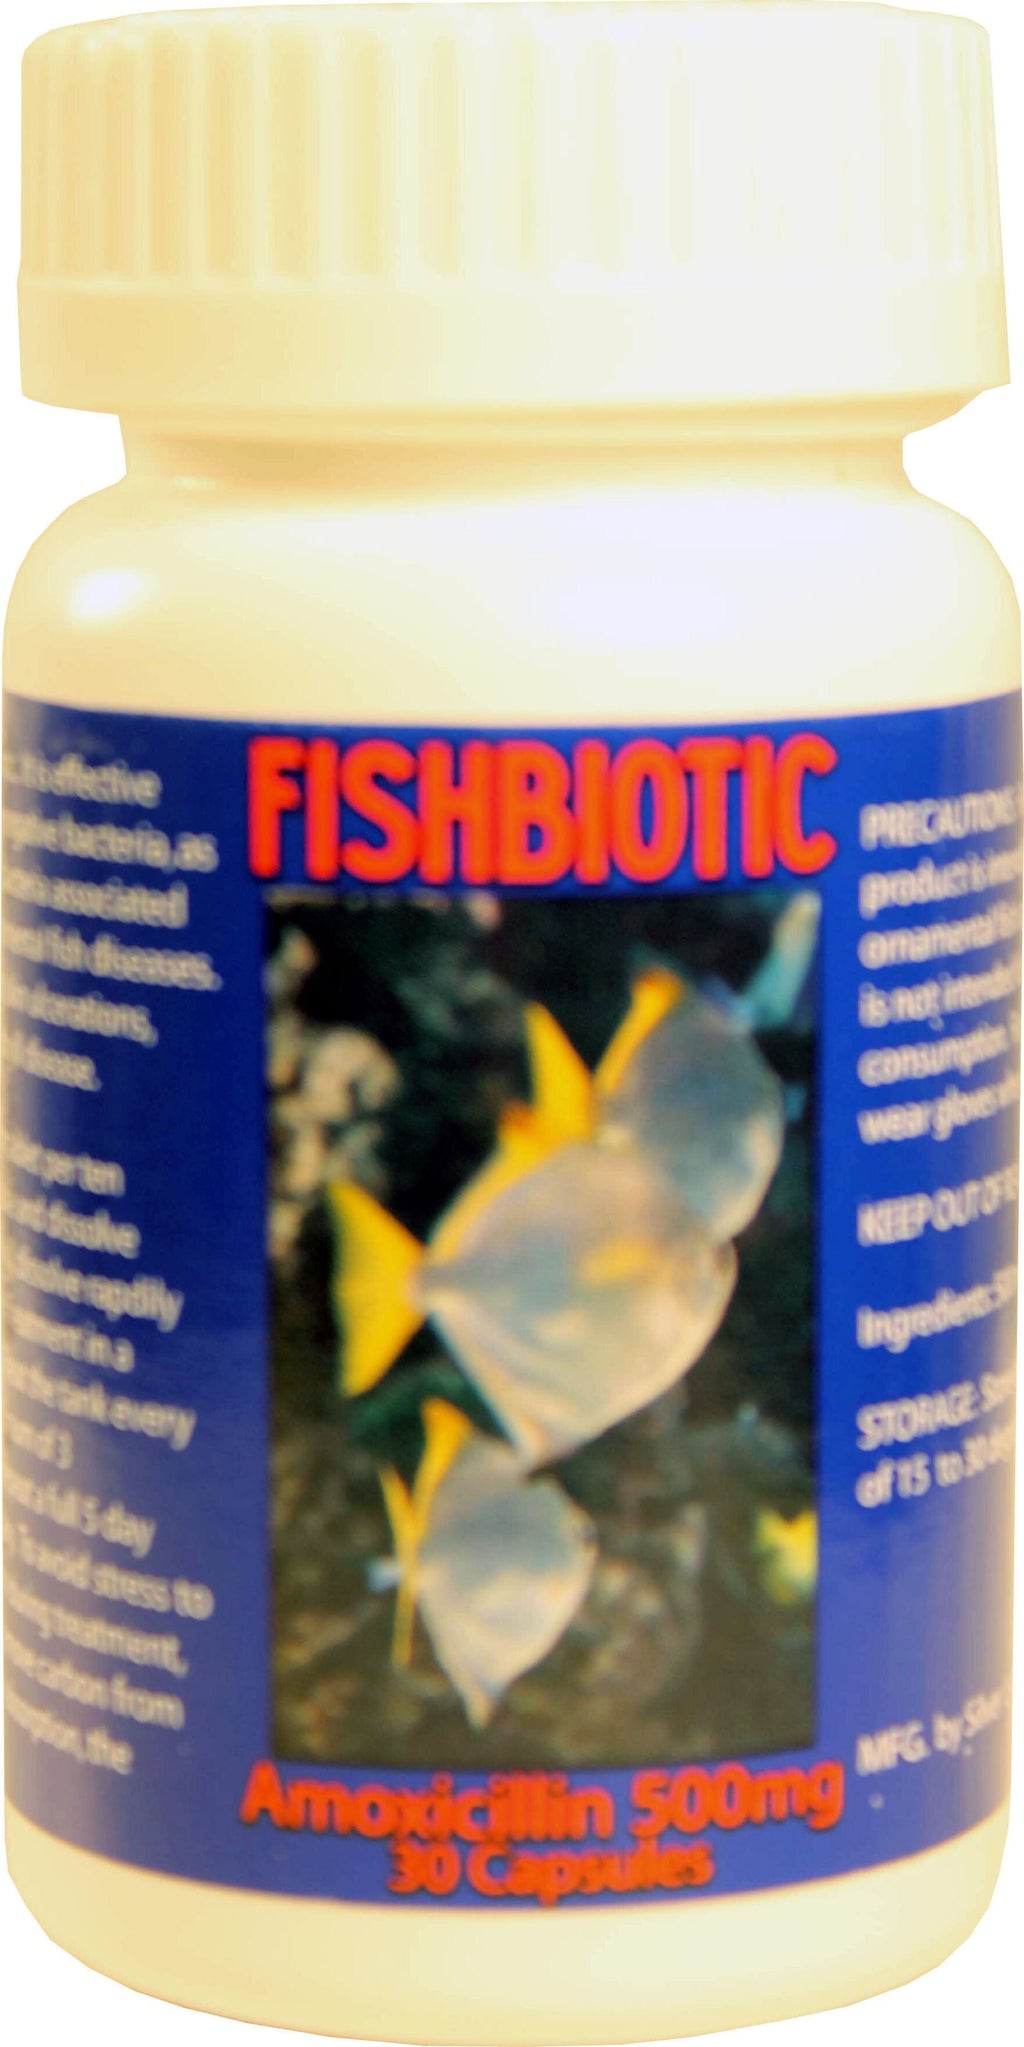 Fishbiotic Fishbiotic Amoxicillin Capsules Fish Medication - 500 Mg - 30Ct  